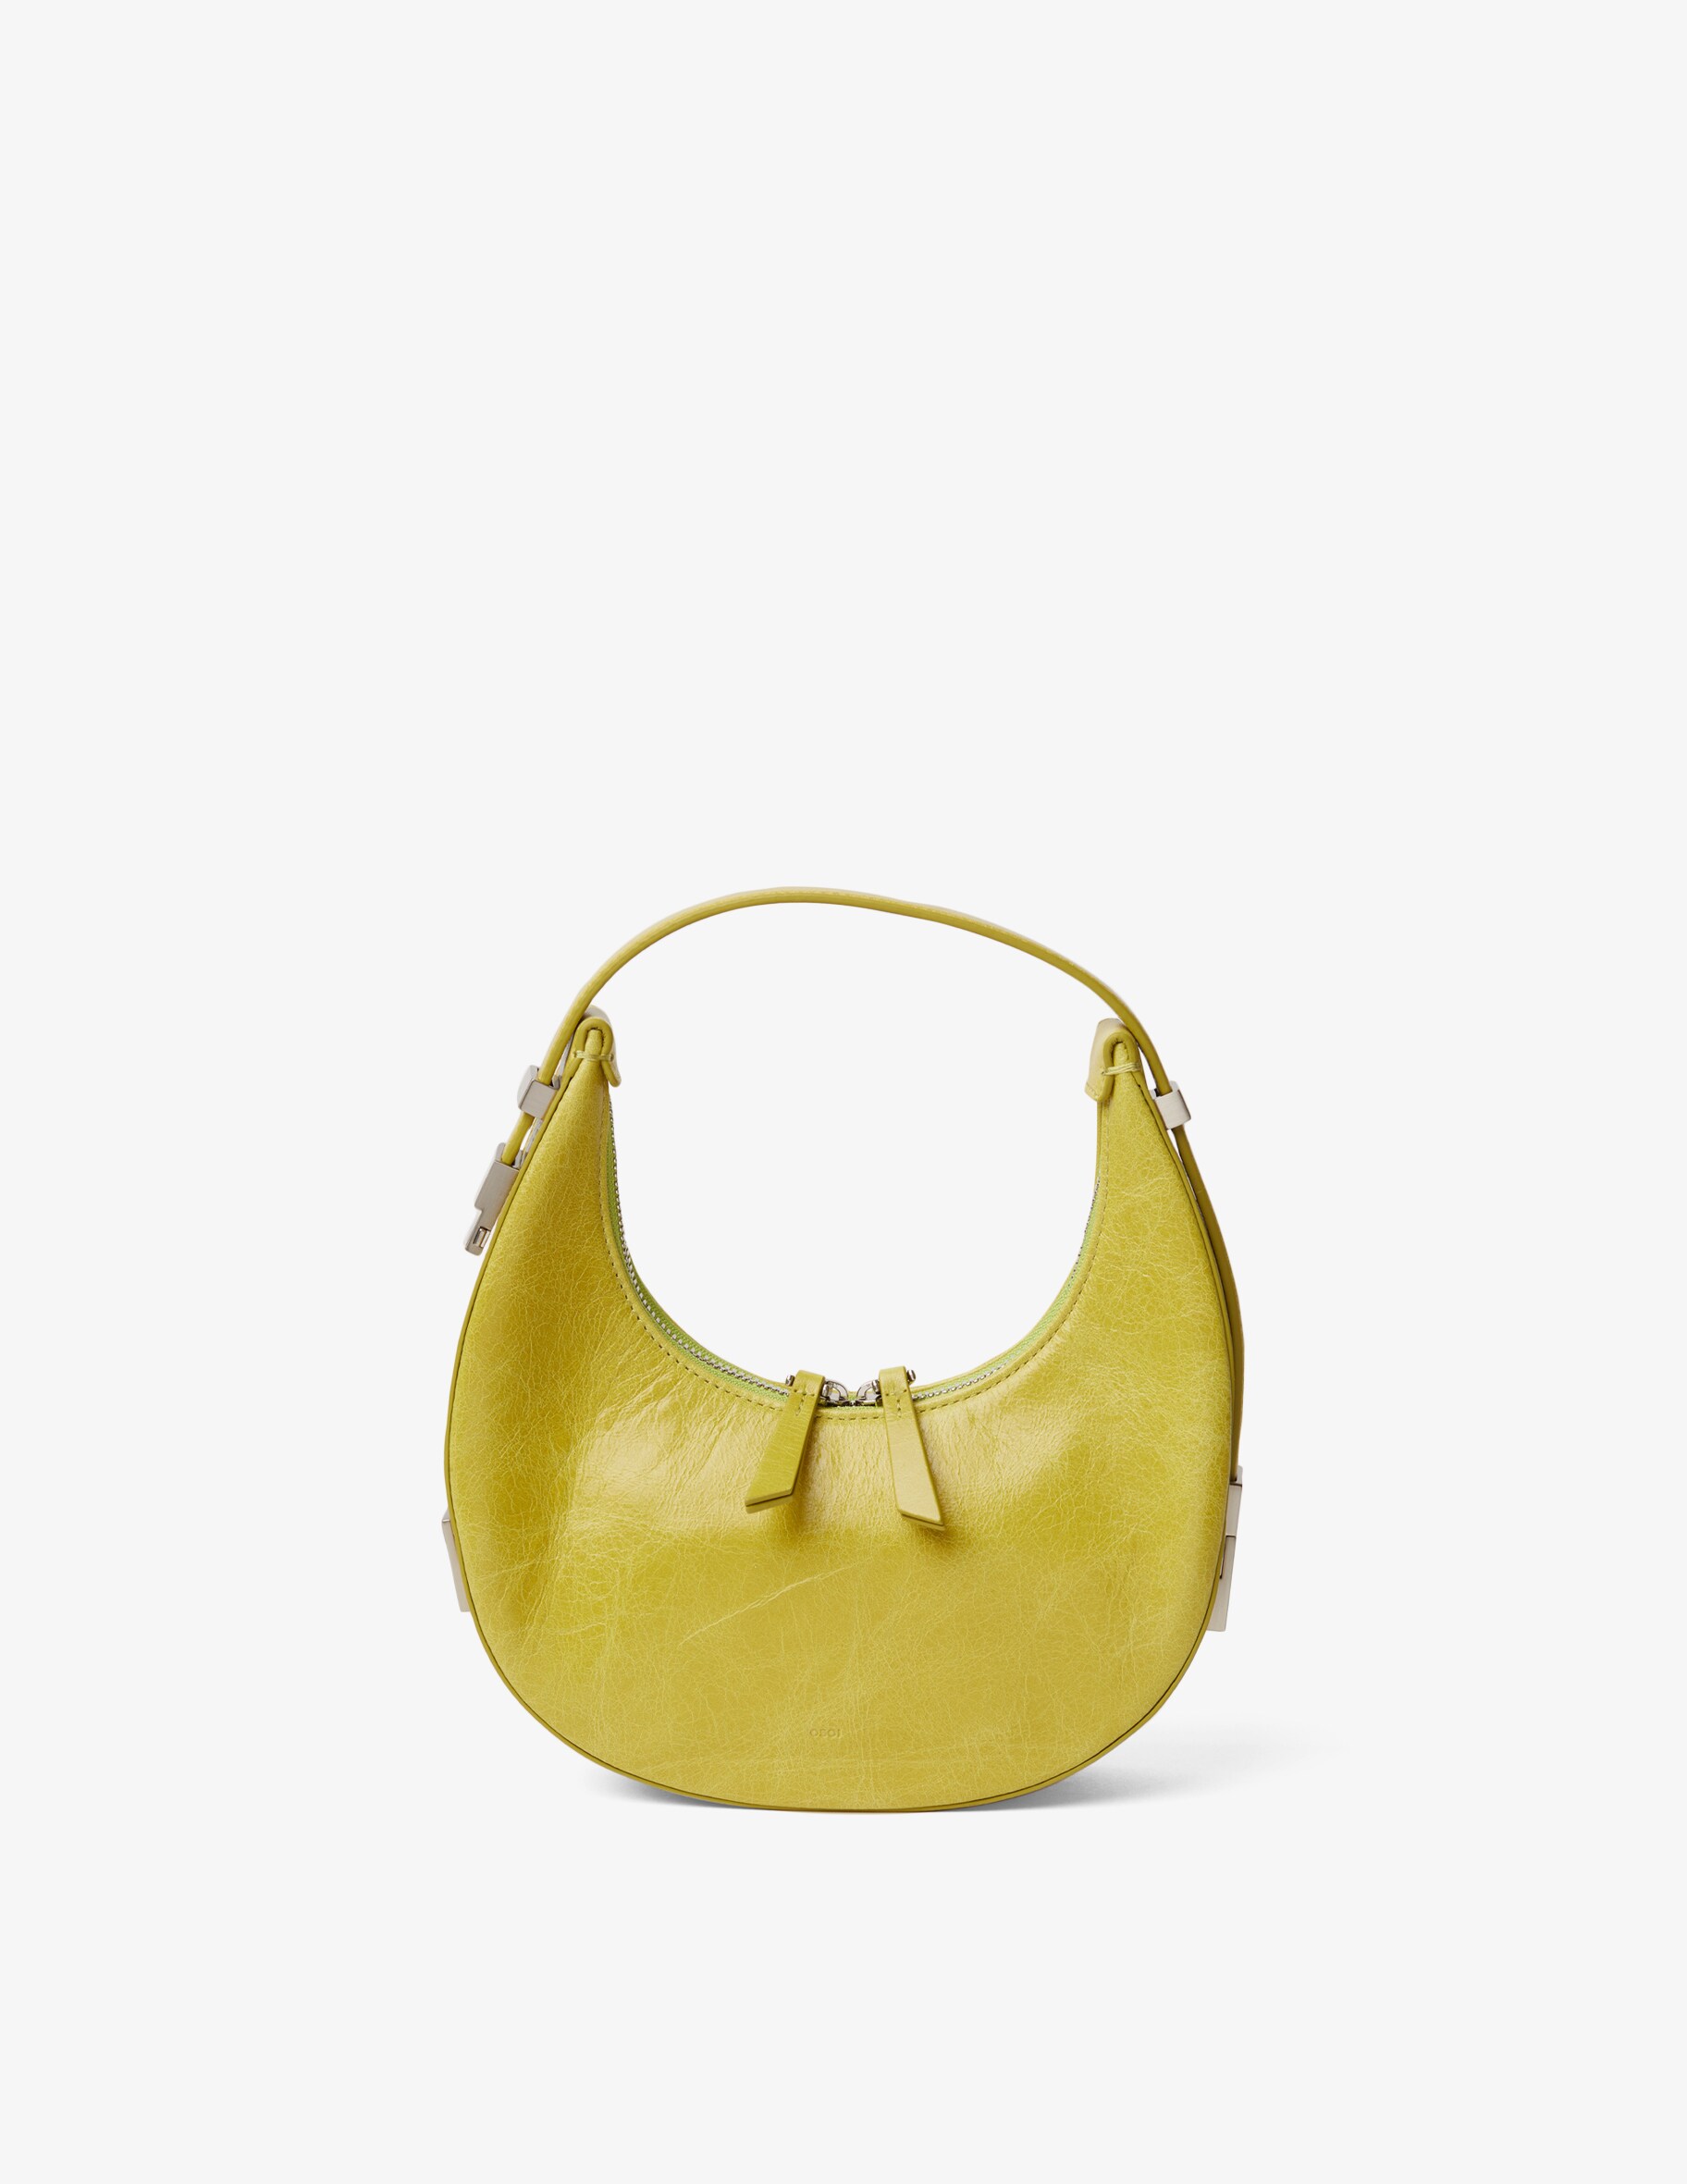 Мини-сумка Toni в форме полумесяца OSOI, желтый